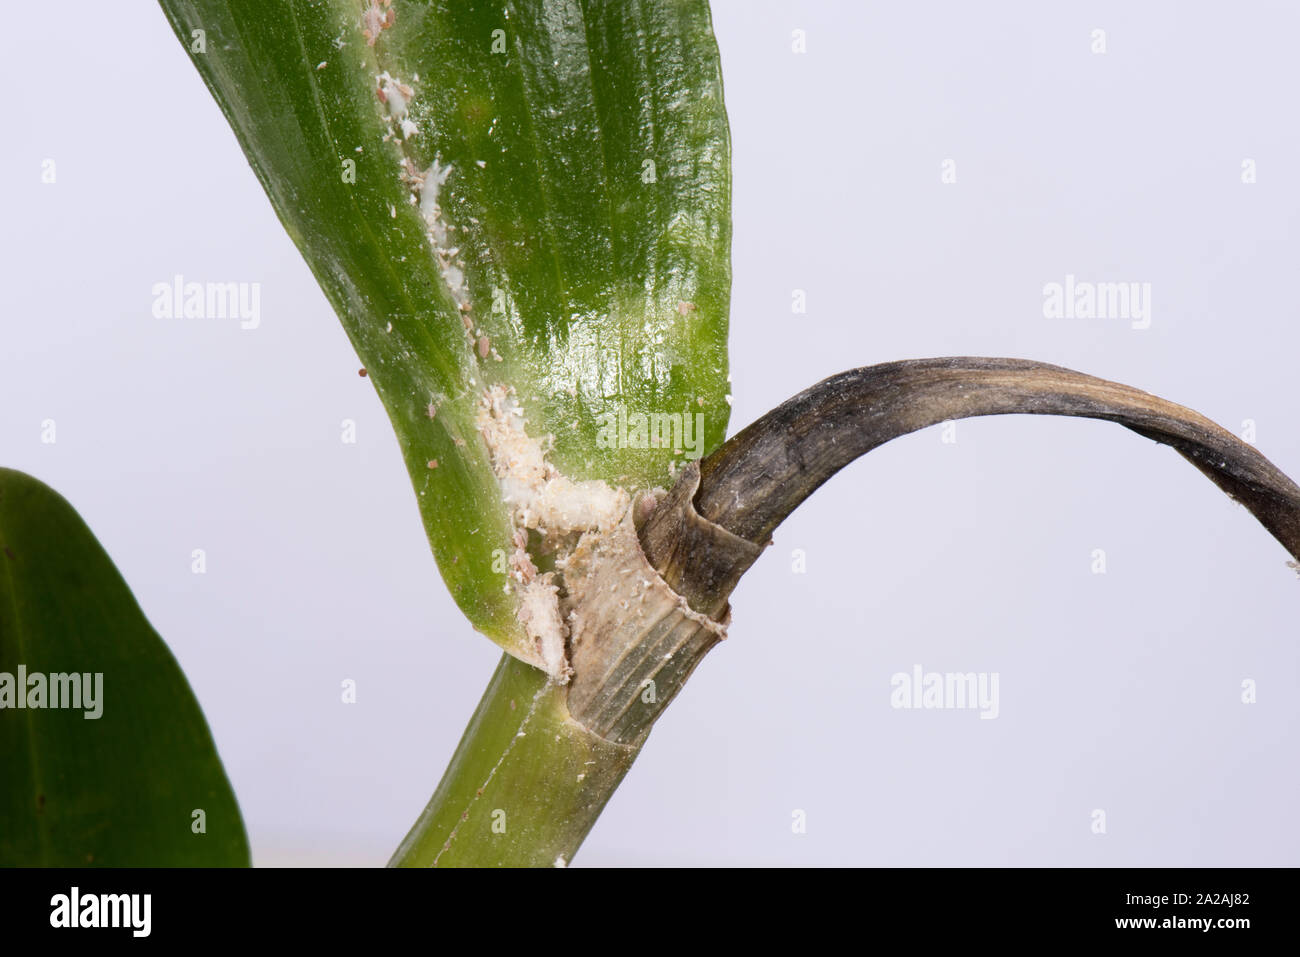 Unklar bleibt oder Knolle mealybug (Pseudococcus viburni) Schädlinge, Beschädigung und Honigtau auf Blätter und Stengel Dendrobium orchid Stockfoto